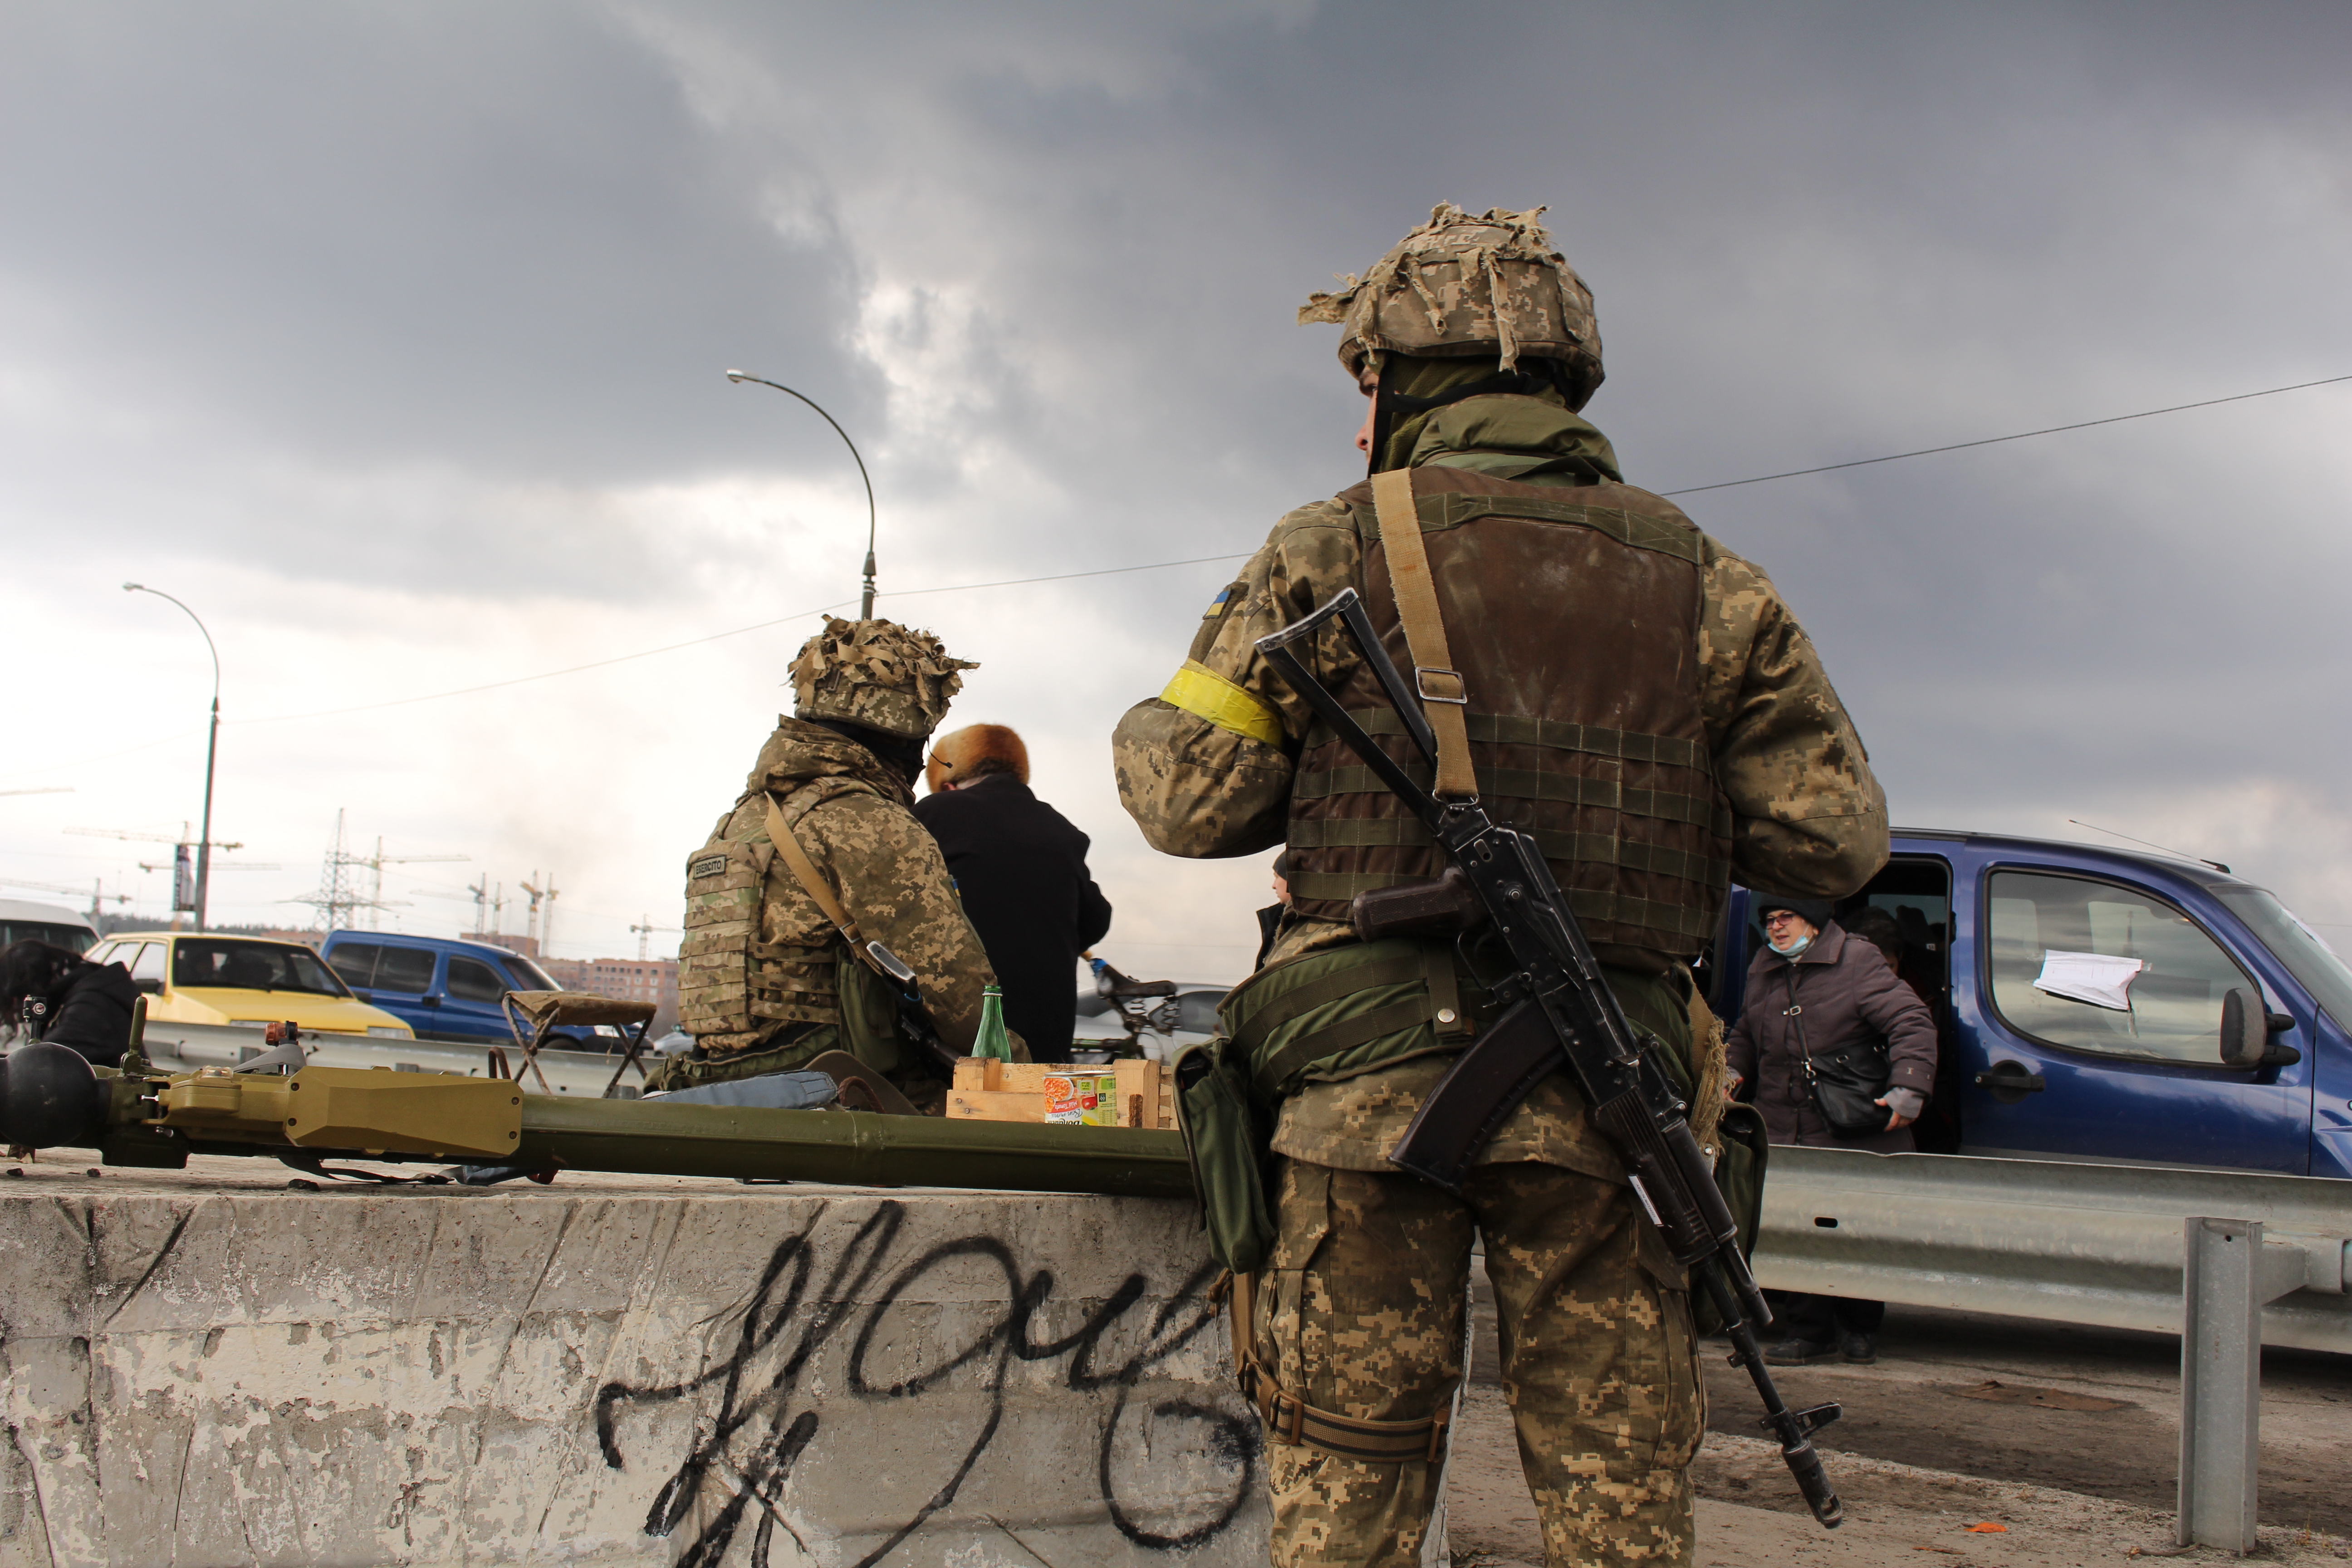 Civilians flee in terror as Ukraine’s military deter Russia in Irpin